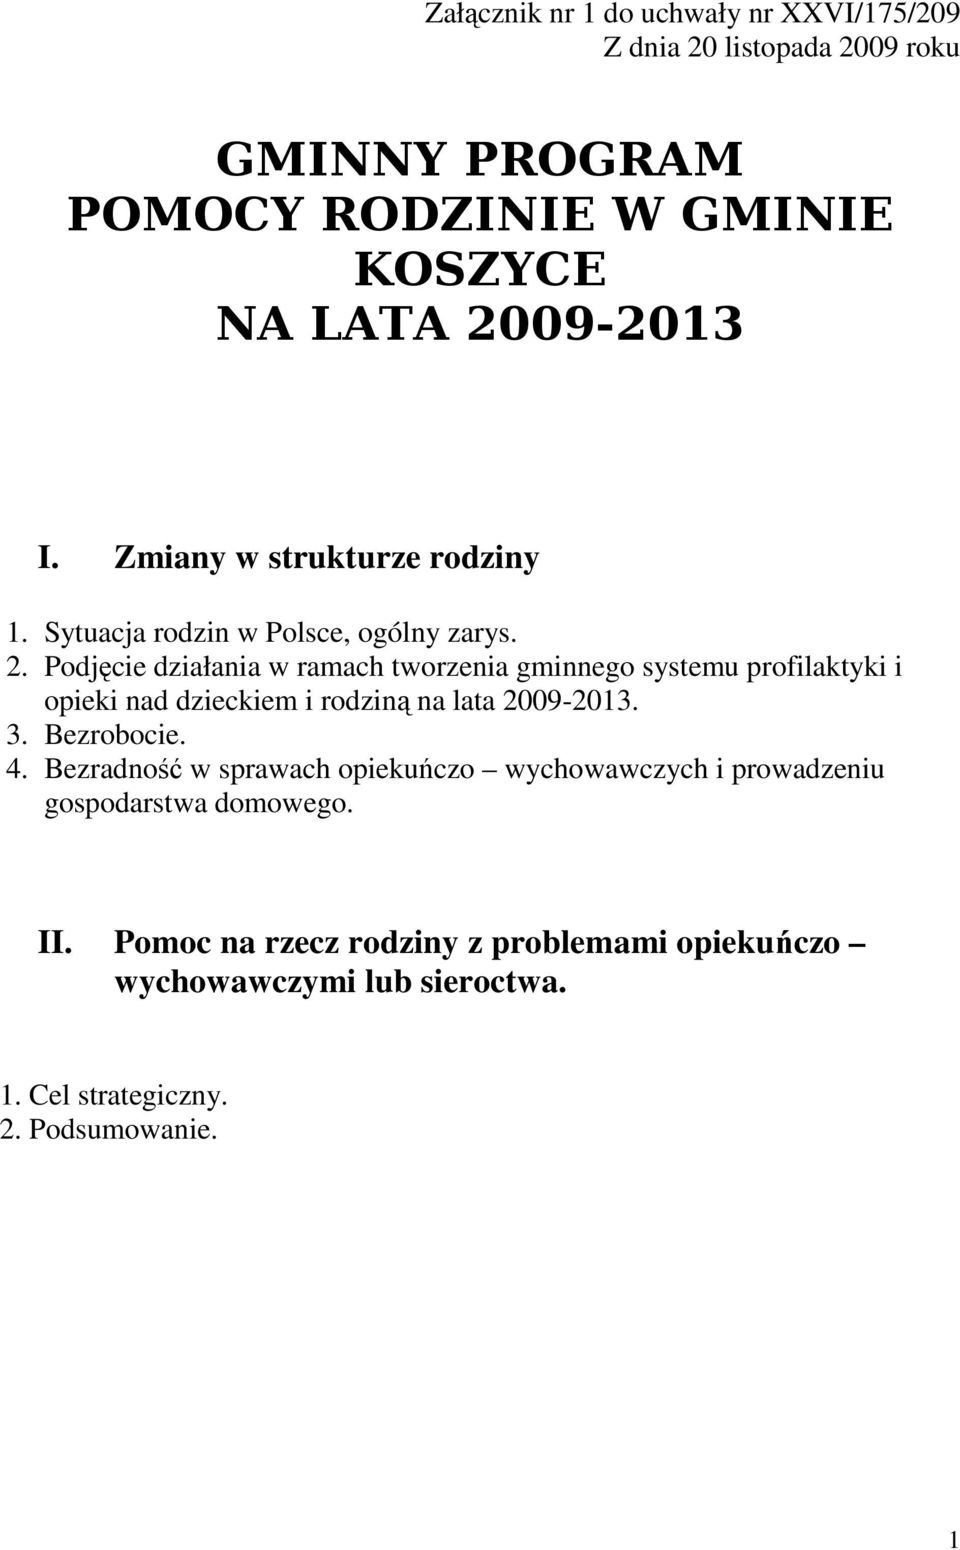 Podjęcie działania w ramach tworzenia gminnego systemu profilaktyki i opieki nad dzieckiem i rodziną na lata 2009-2013. 3. Bezrobocie. 4.